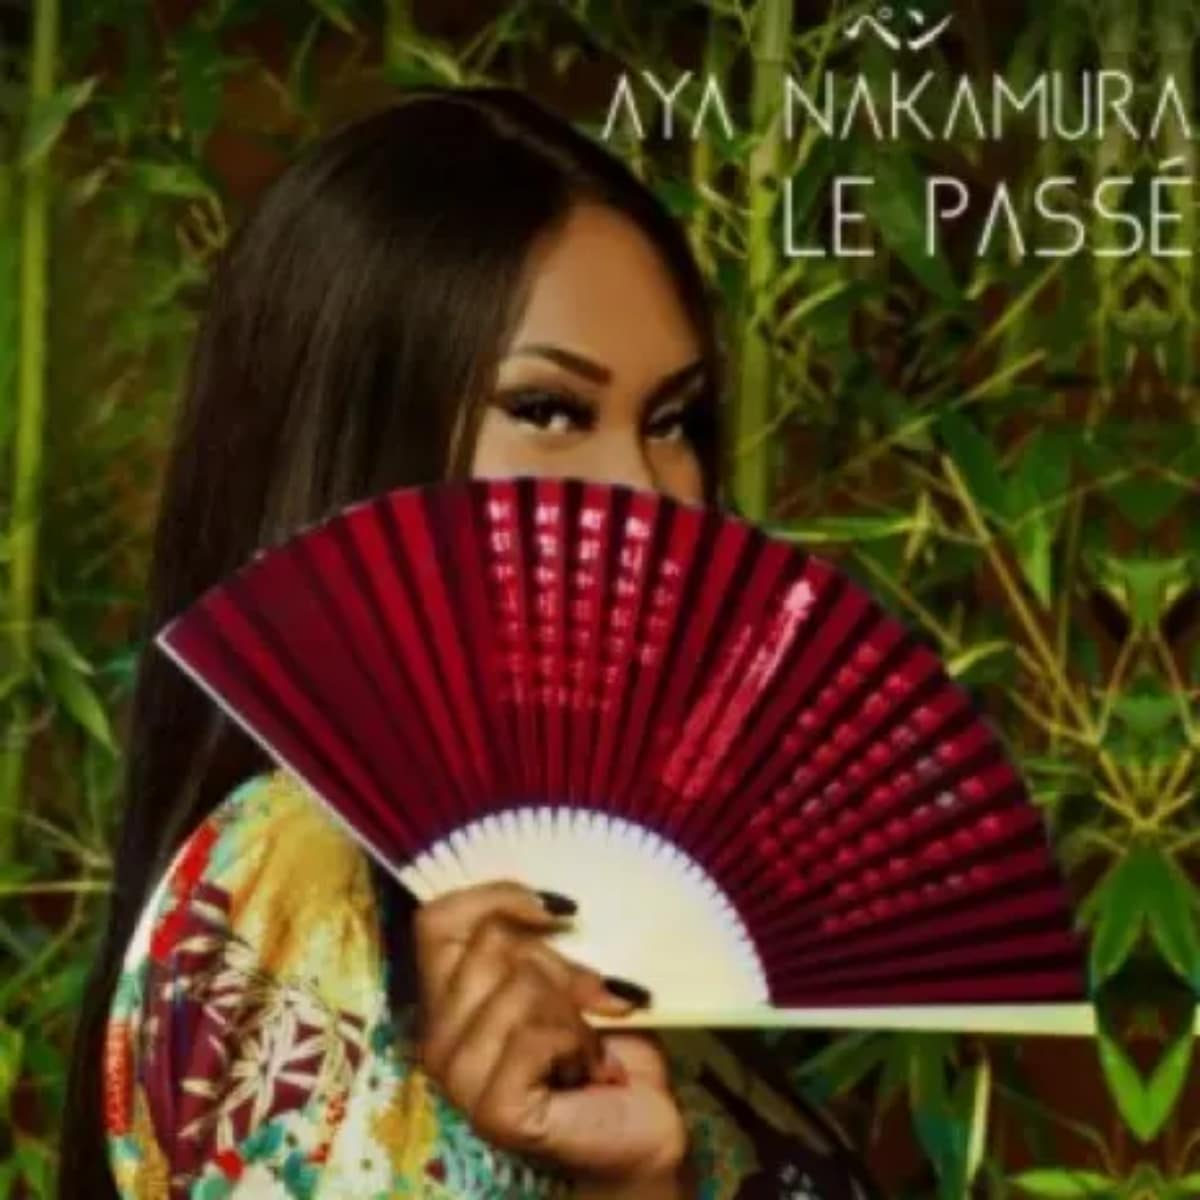 DOWNLOAD: Aya Nakamura – “Le passé” Video + Audio Mp3